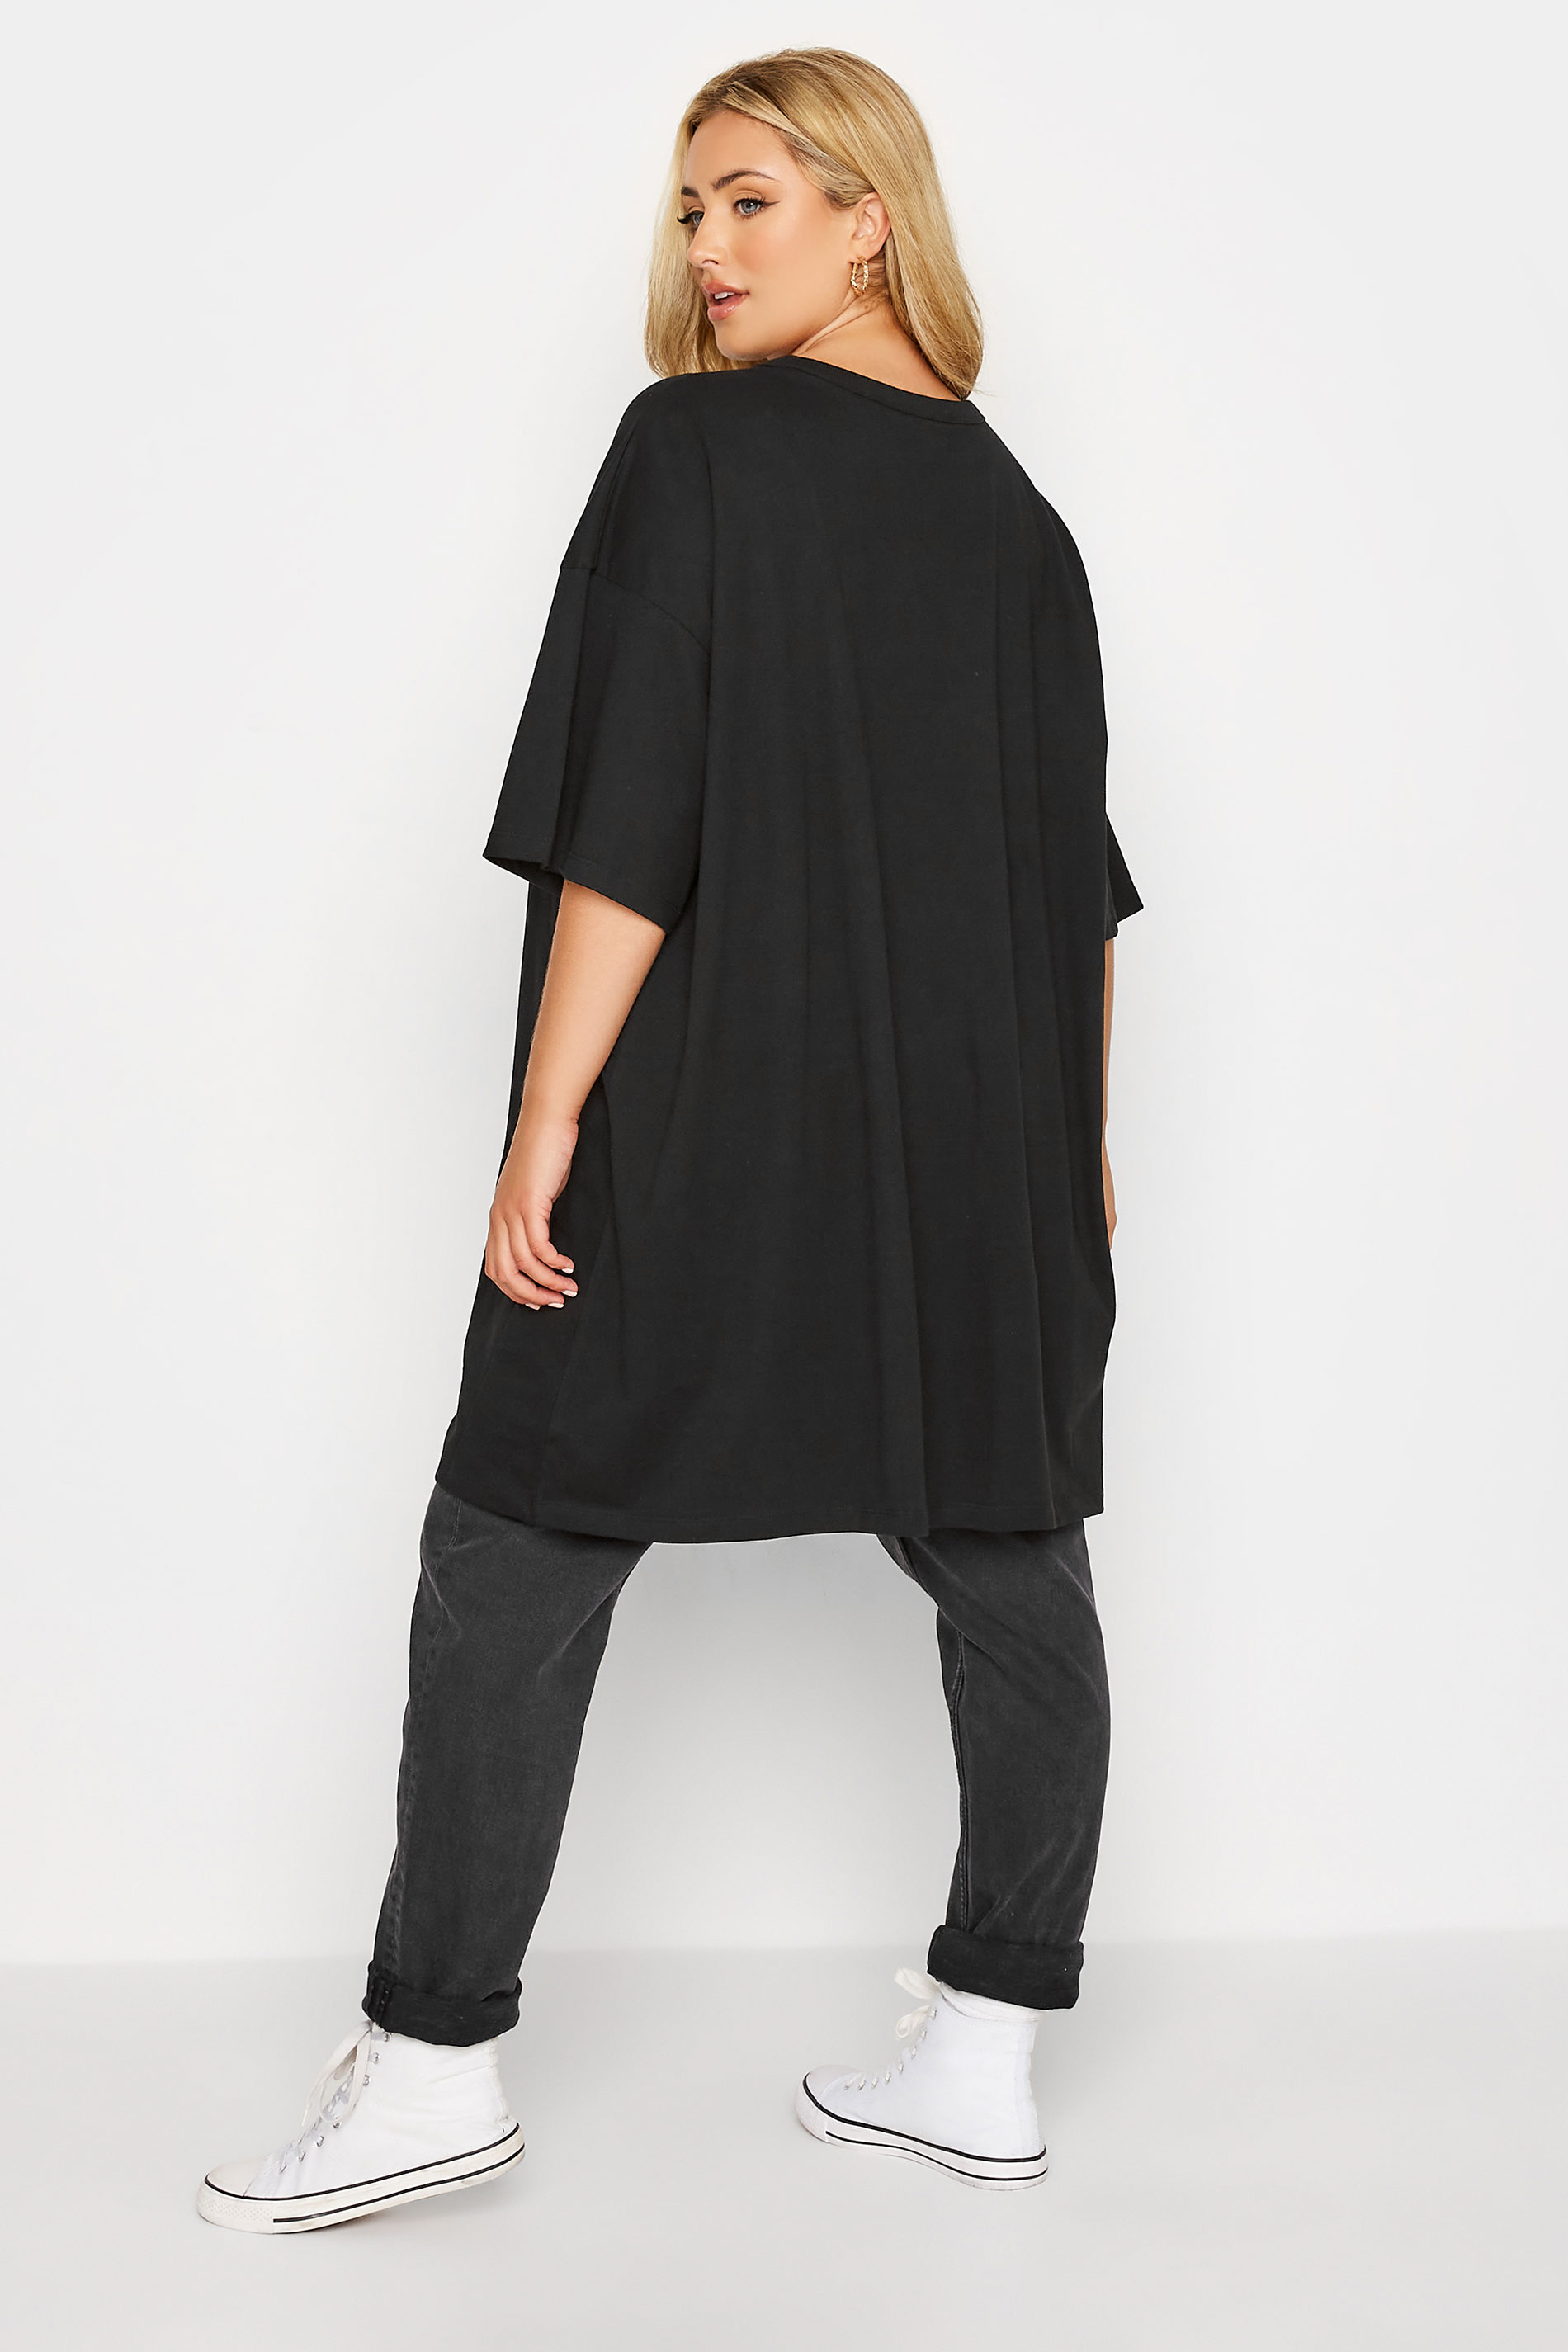 Plus Size Black Oversized Tunic T-Shirt Dress | Yours Clothing 3